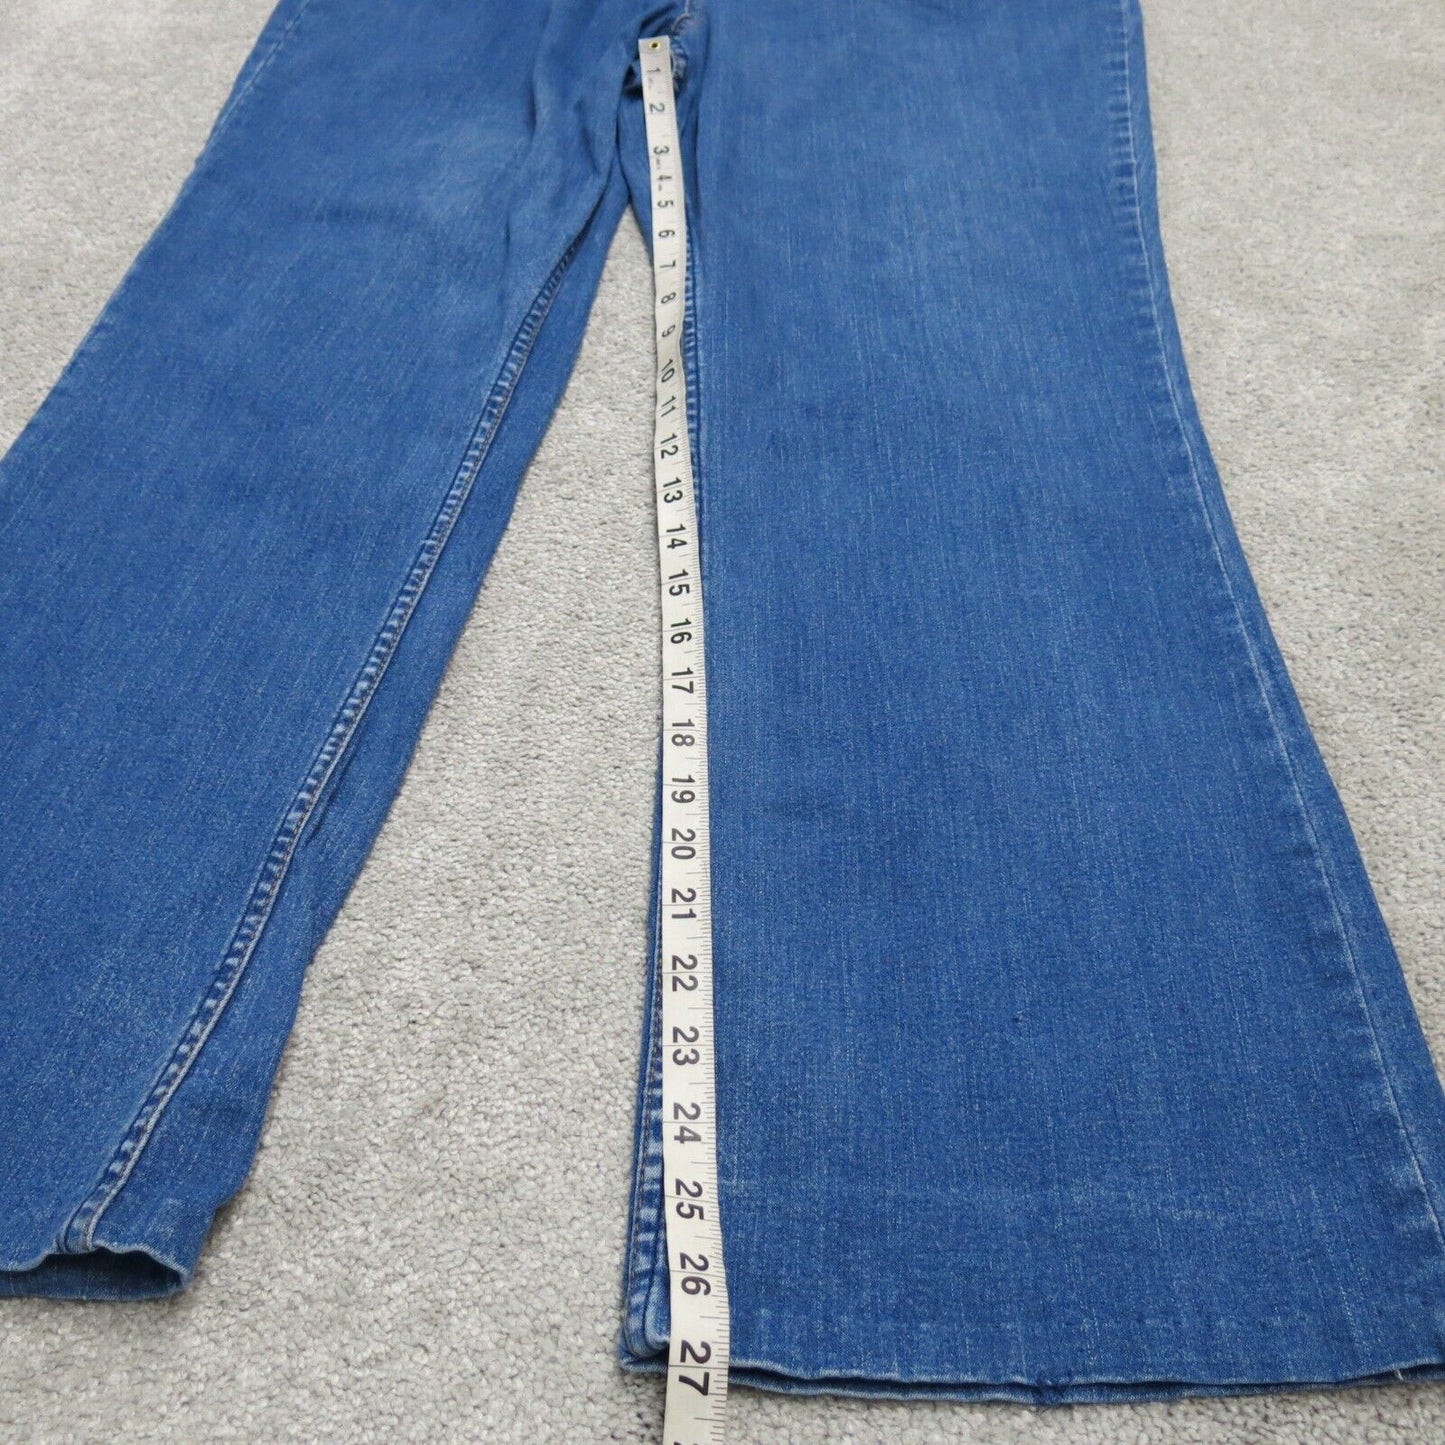 Signature By Levis Mens Boot Cut Jeans Denim Mid Rise Cotton Blue Misses 16 Long